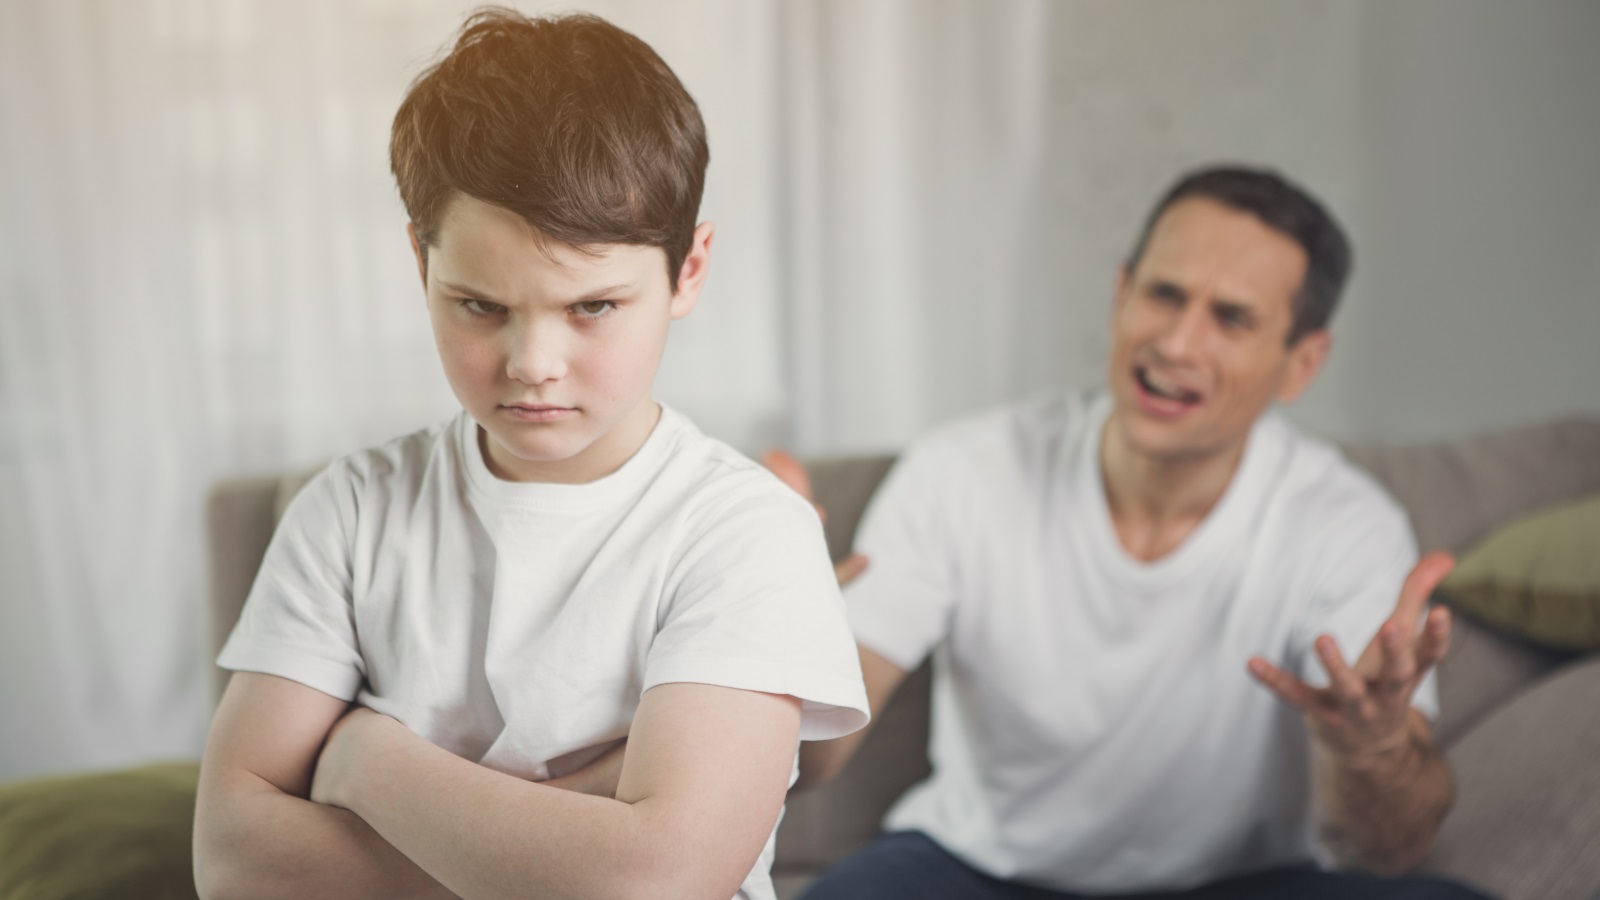 الأطفال والمراهقين الذين يشعرون بأن السيطرة النفسية لآبائهم مرتفعة يكونون أكثر عرضة للإصابة باضطرابات نفسية وسلوكية أكثر من غيرهم